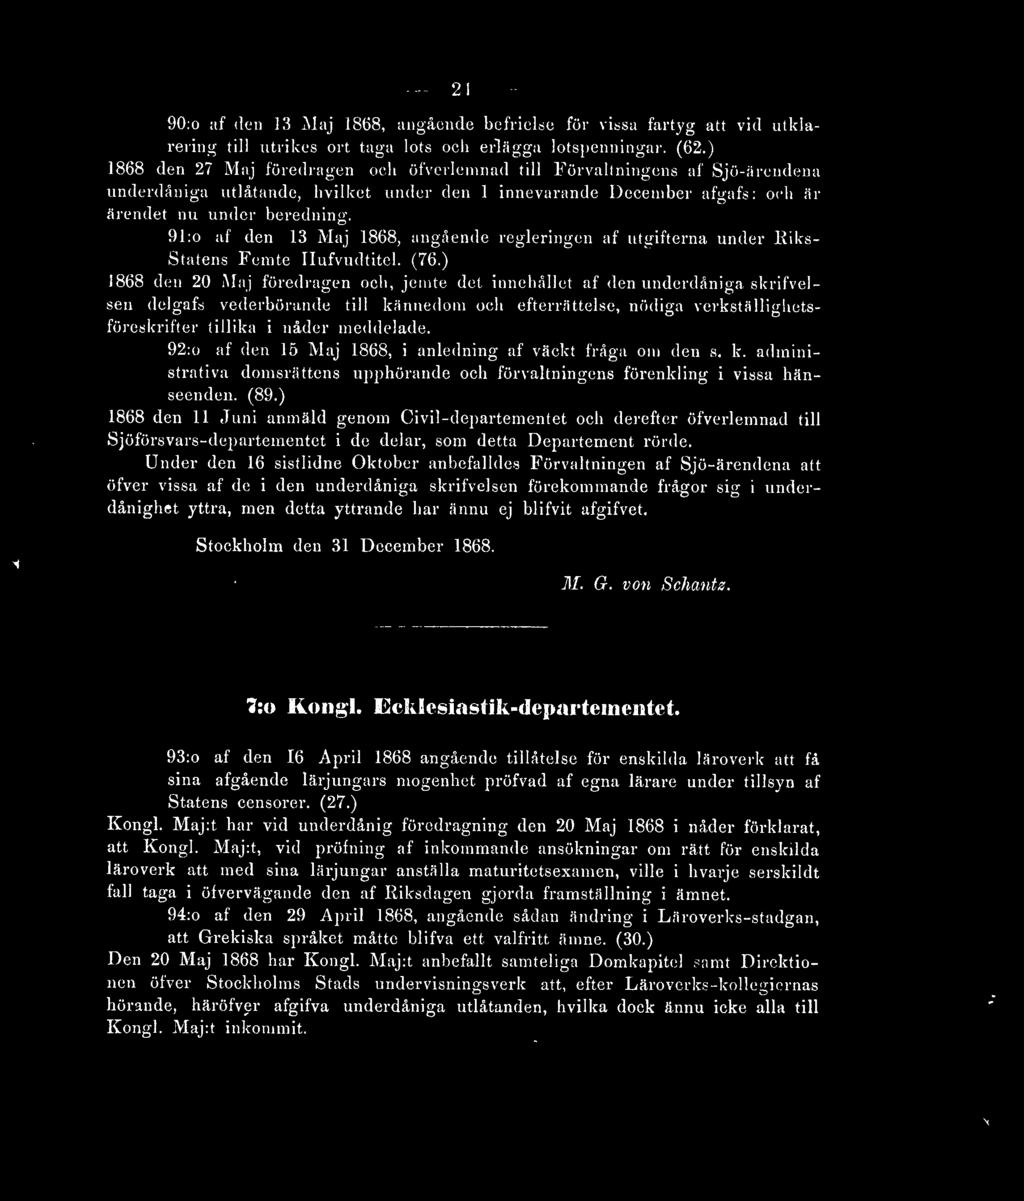 91 :o af den 13 Maj 1868, angående regleringen af utgifterna under Riks- Statens Femte Ilufvudtitel. (76.